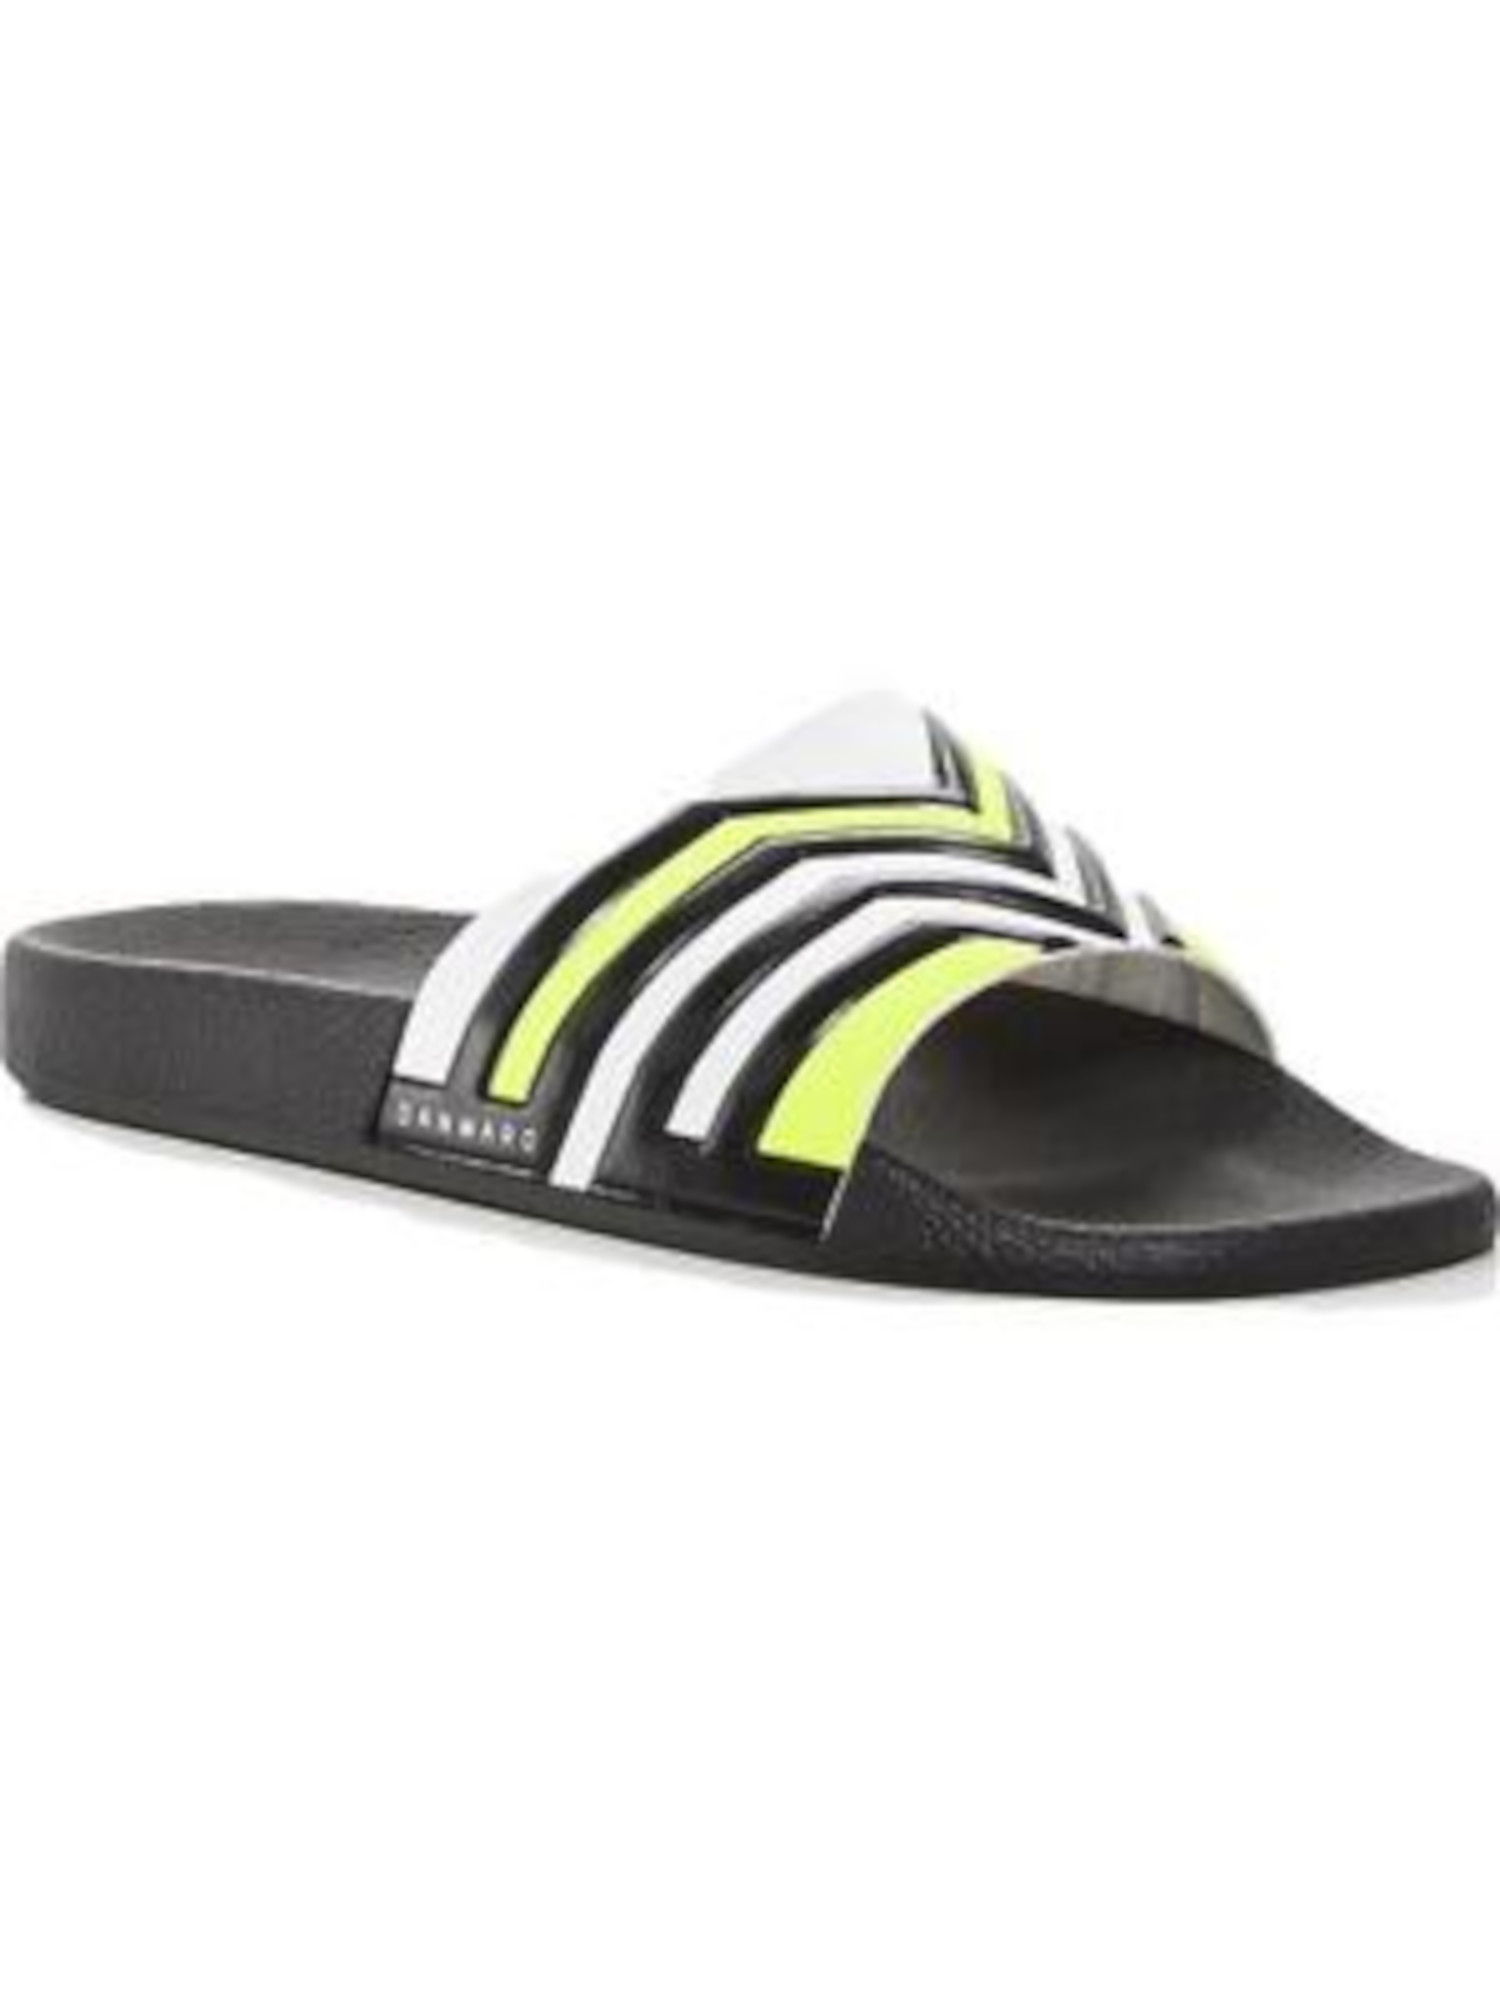 DAN WARD Mens Black Striped Logo Round Toe Platform Slip On Slide Sandals Shoes 45